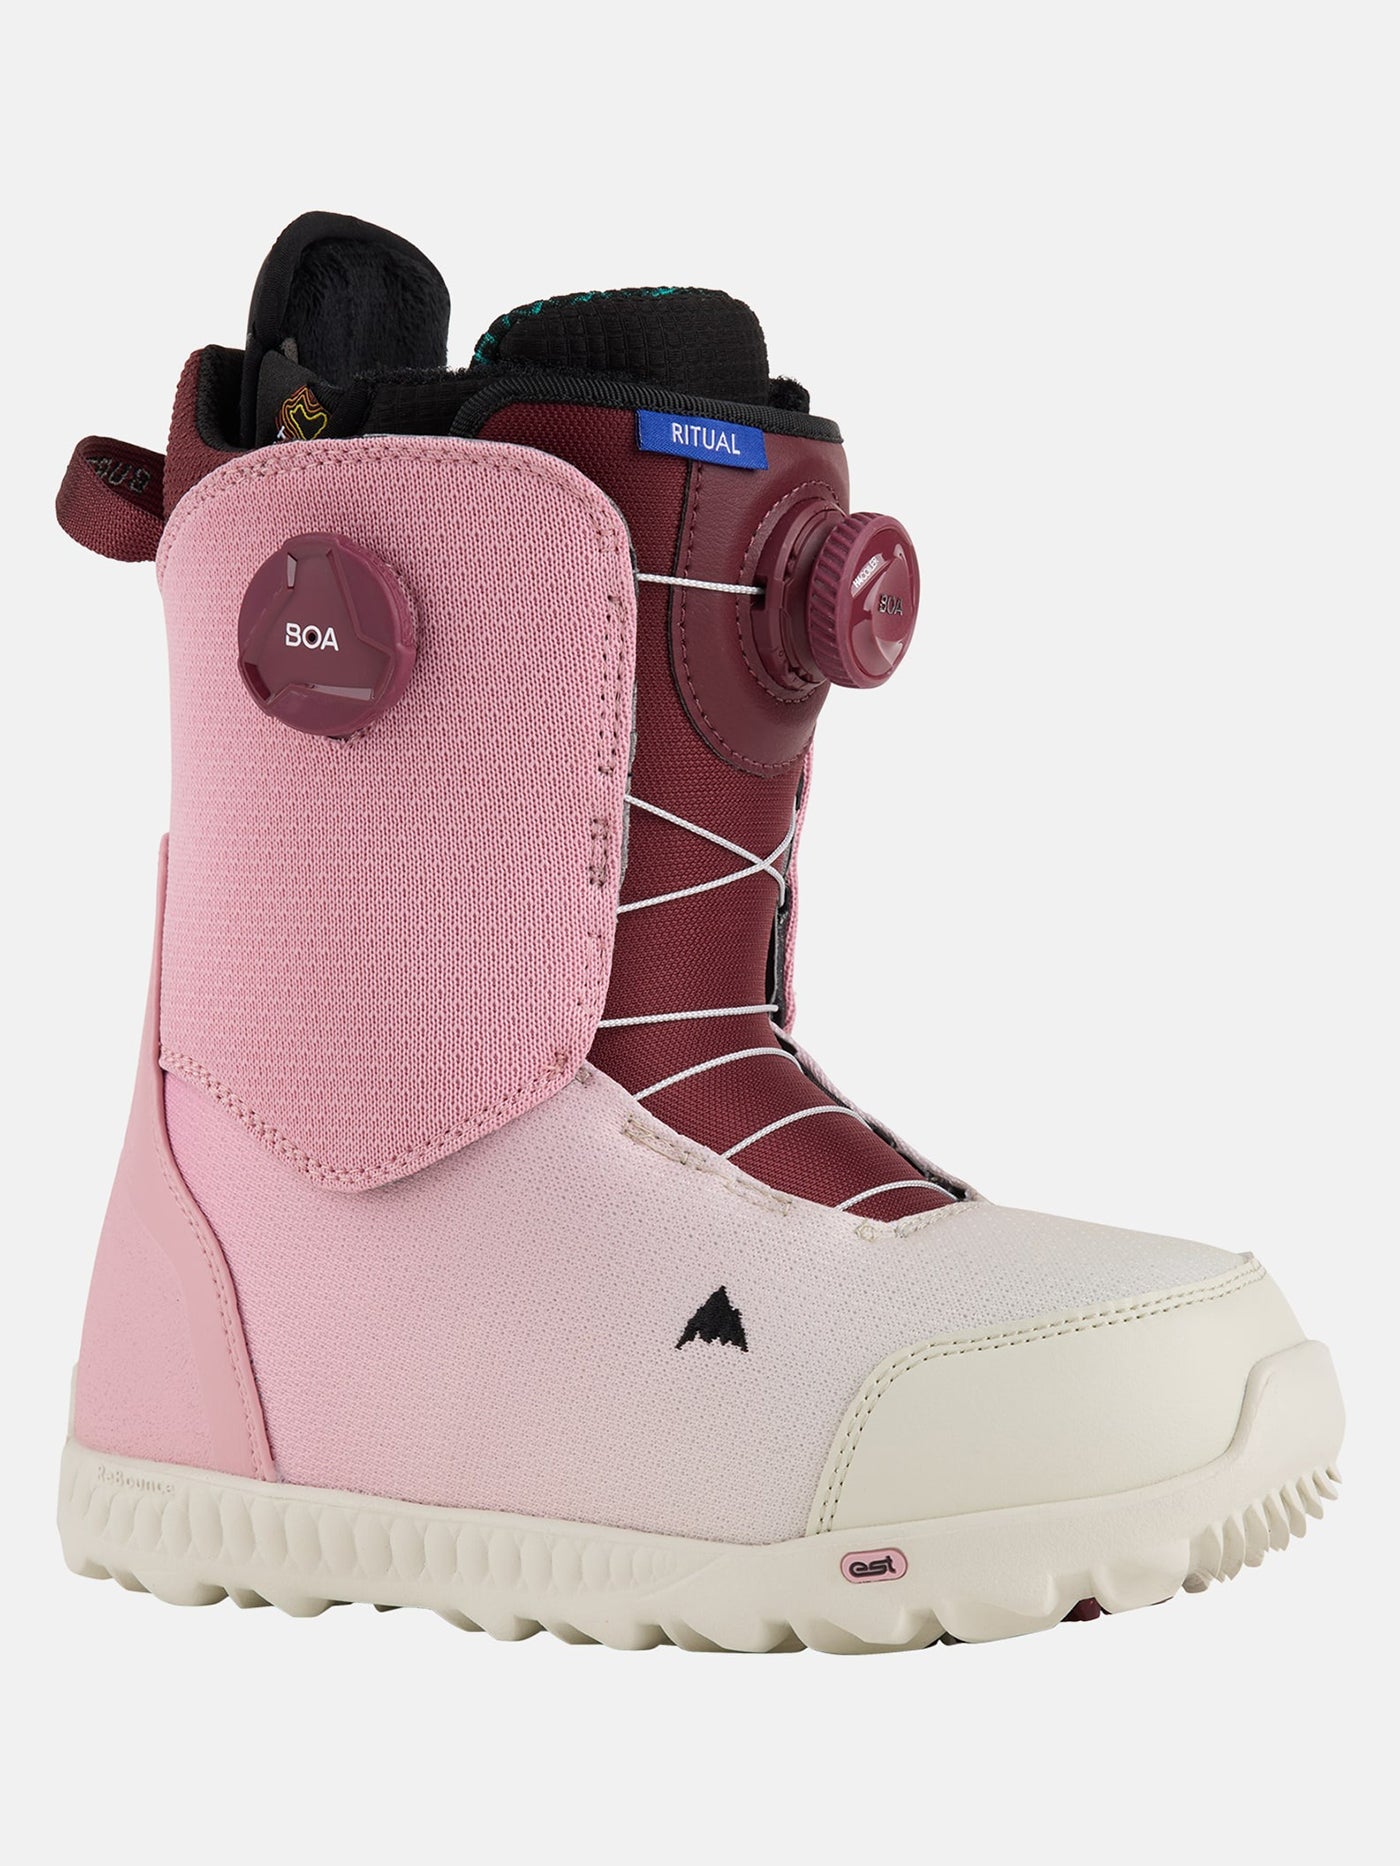 Burton Ritual BOA Snowboard Boots 2024 | EMPIRE